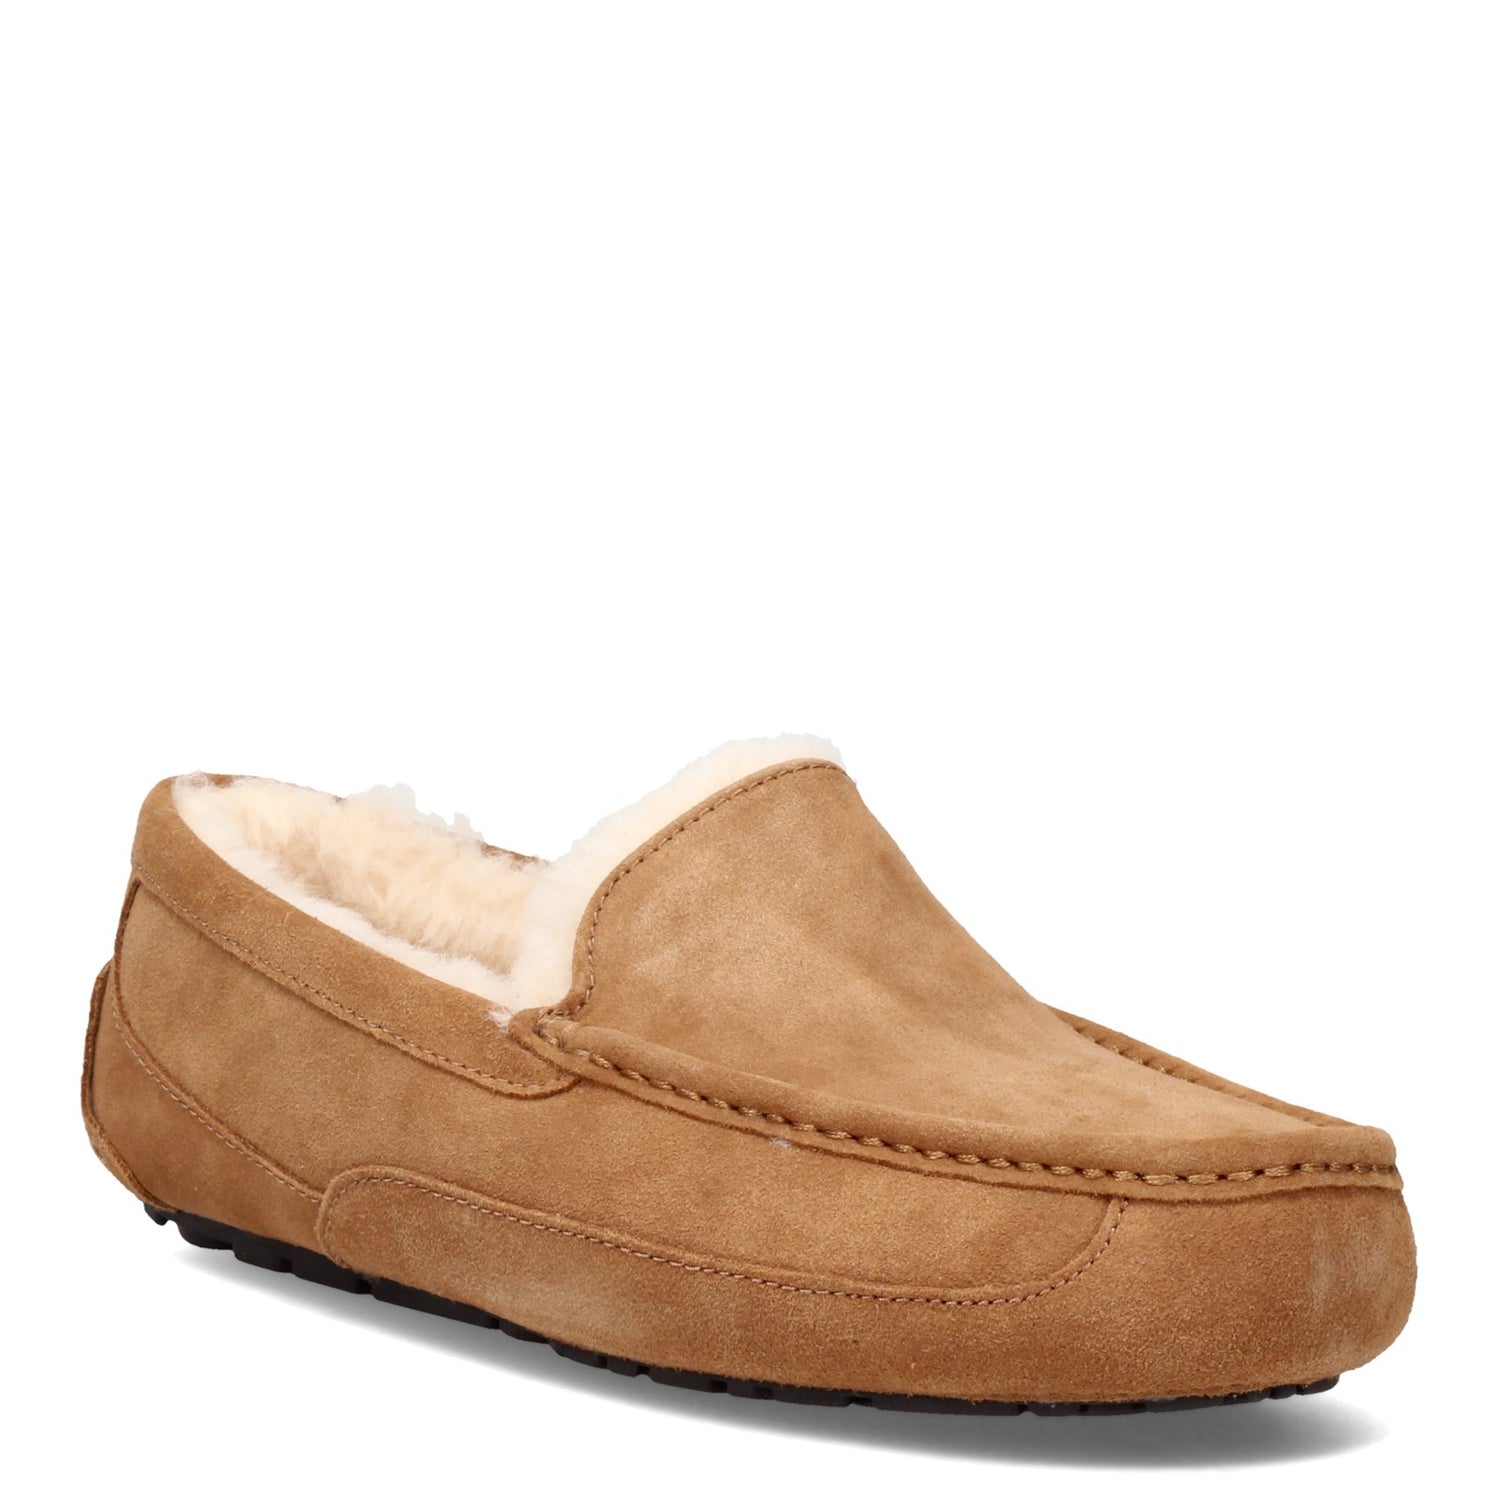 Peltz Shoes  Men's Ugg Ascot Slipper Chestnut 1101110-CHE